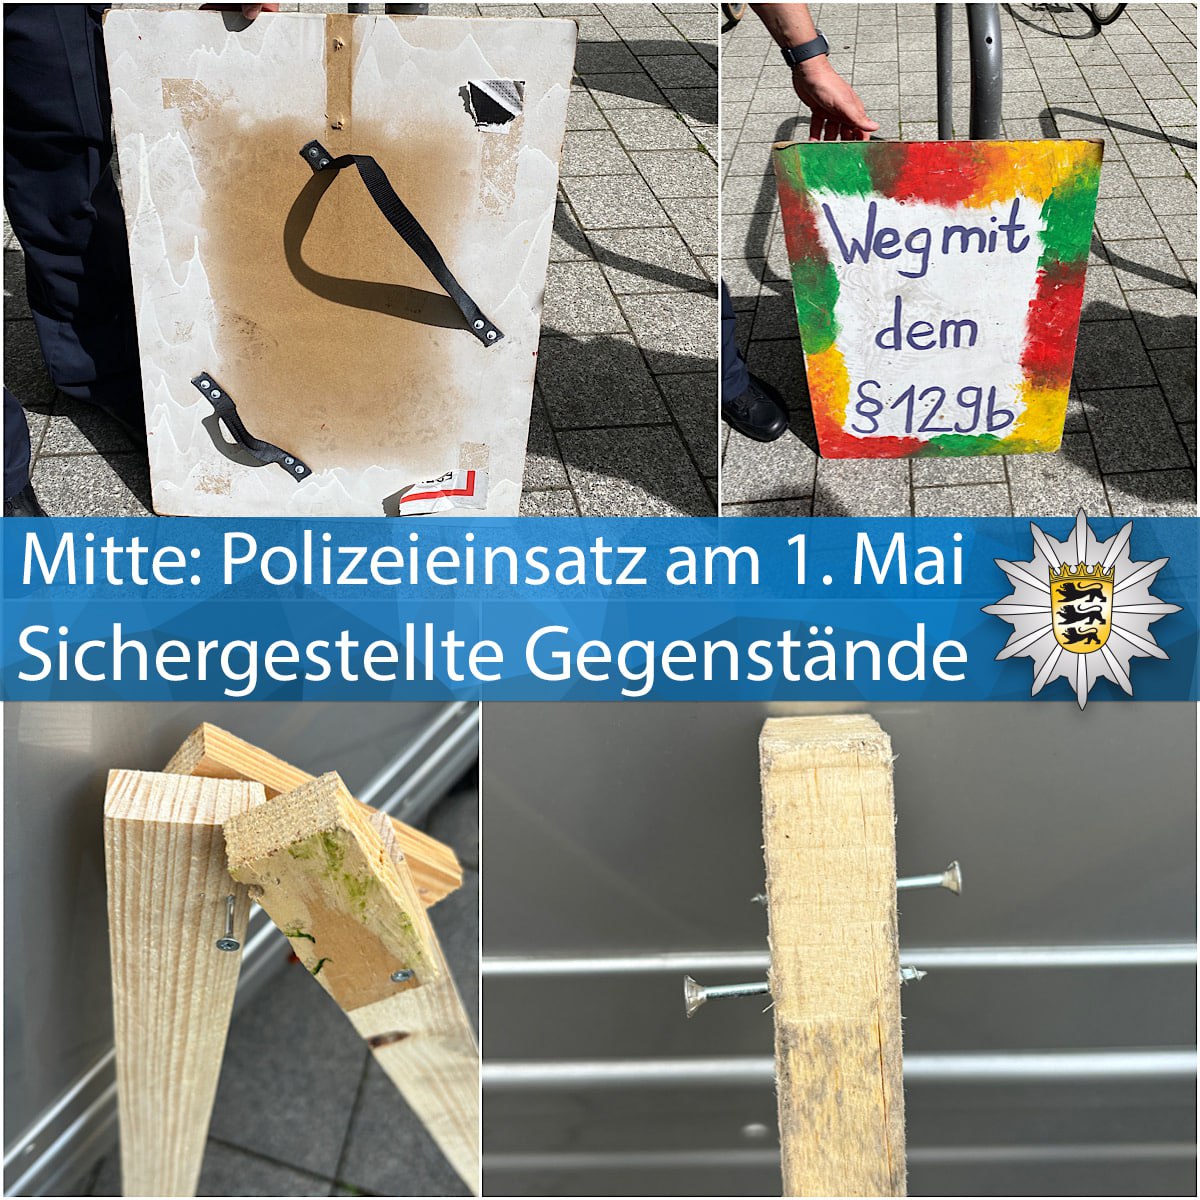 Von ##linksextremistischen Faschisten benutzte Gegenstände auf einer #friedlichen Demo gegen das böse Patriarchat 😎

#Antifa